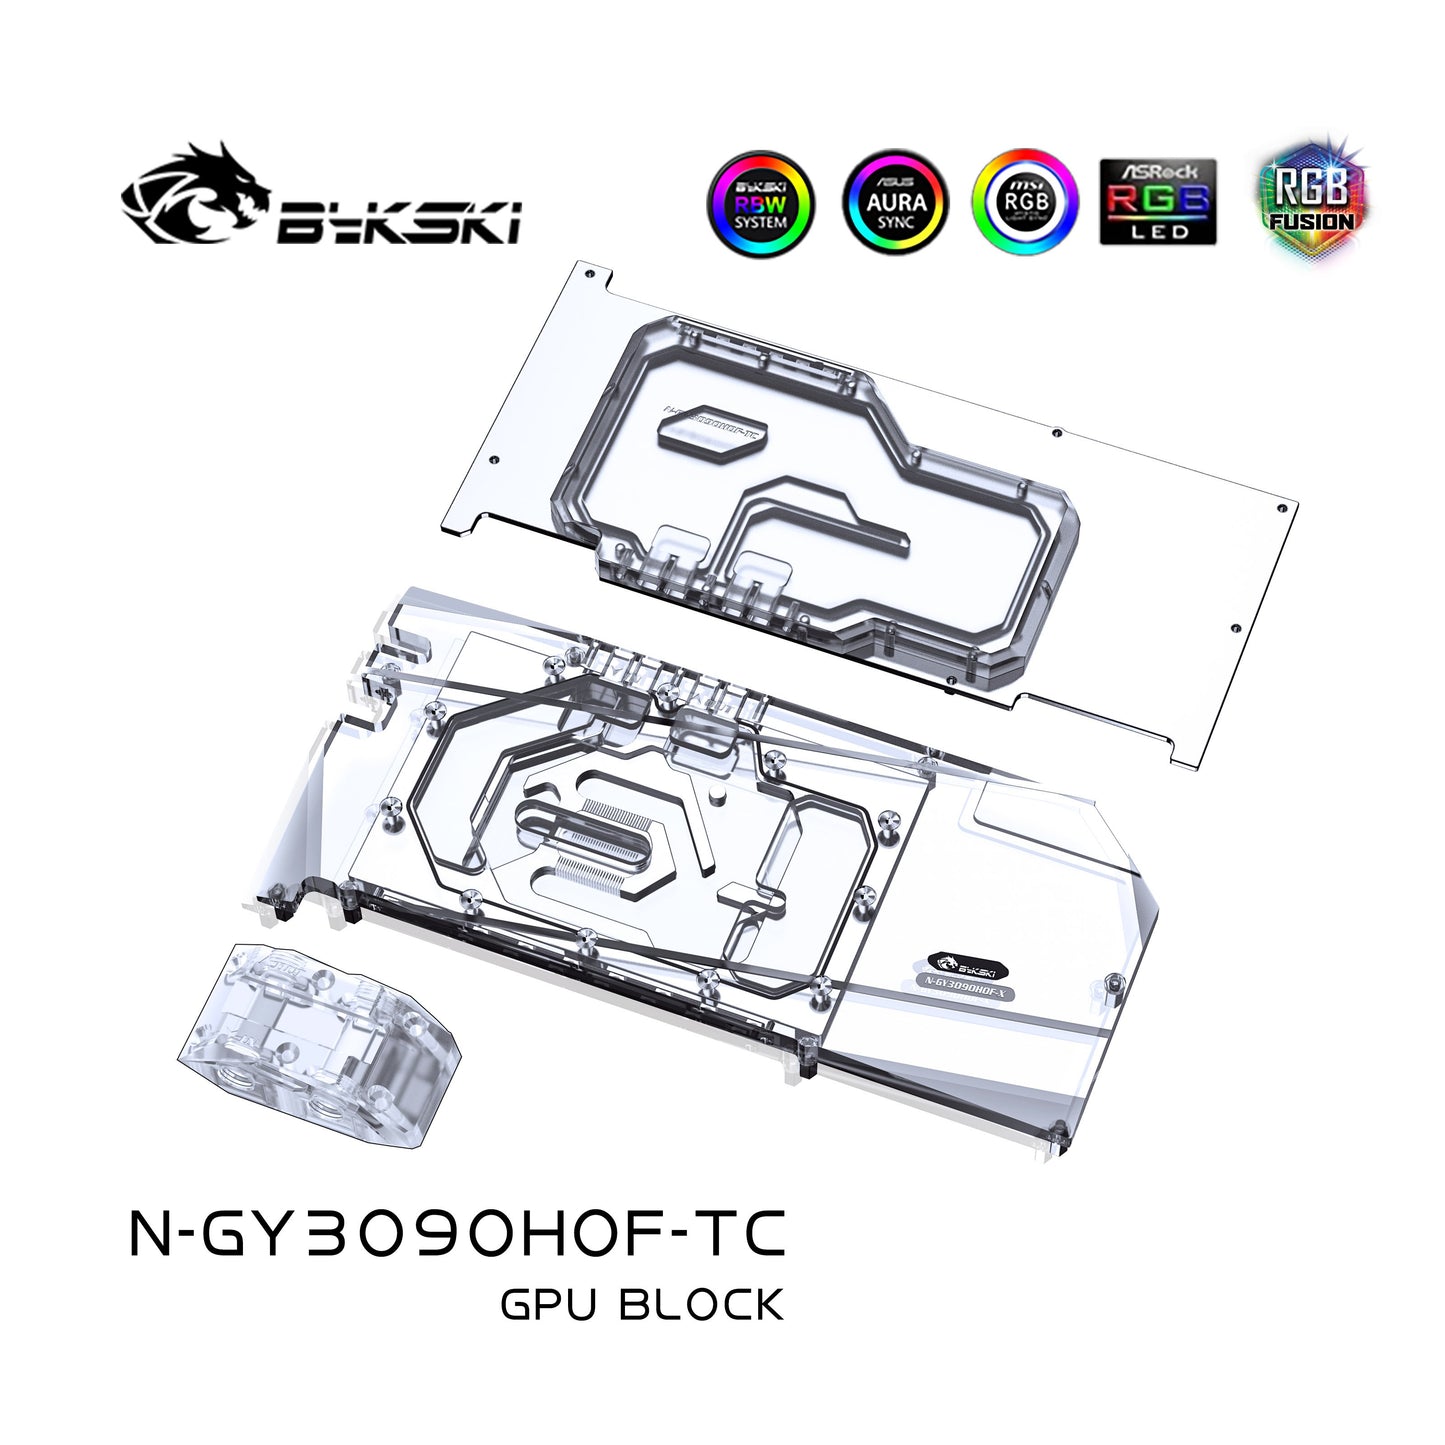 Bloc GPU Bykski avec refroidisseur de fond de panier de voies navigables actives pour Galax RTX 3090 HOF Extreme édition limitée N-GY3090HOF-TC